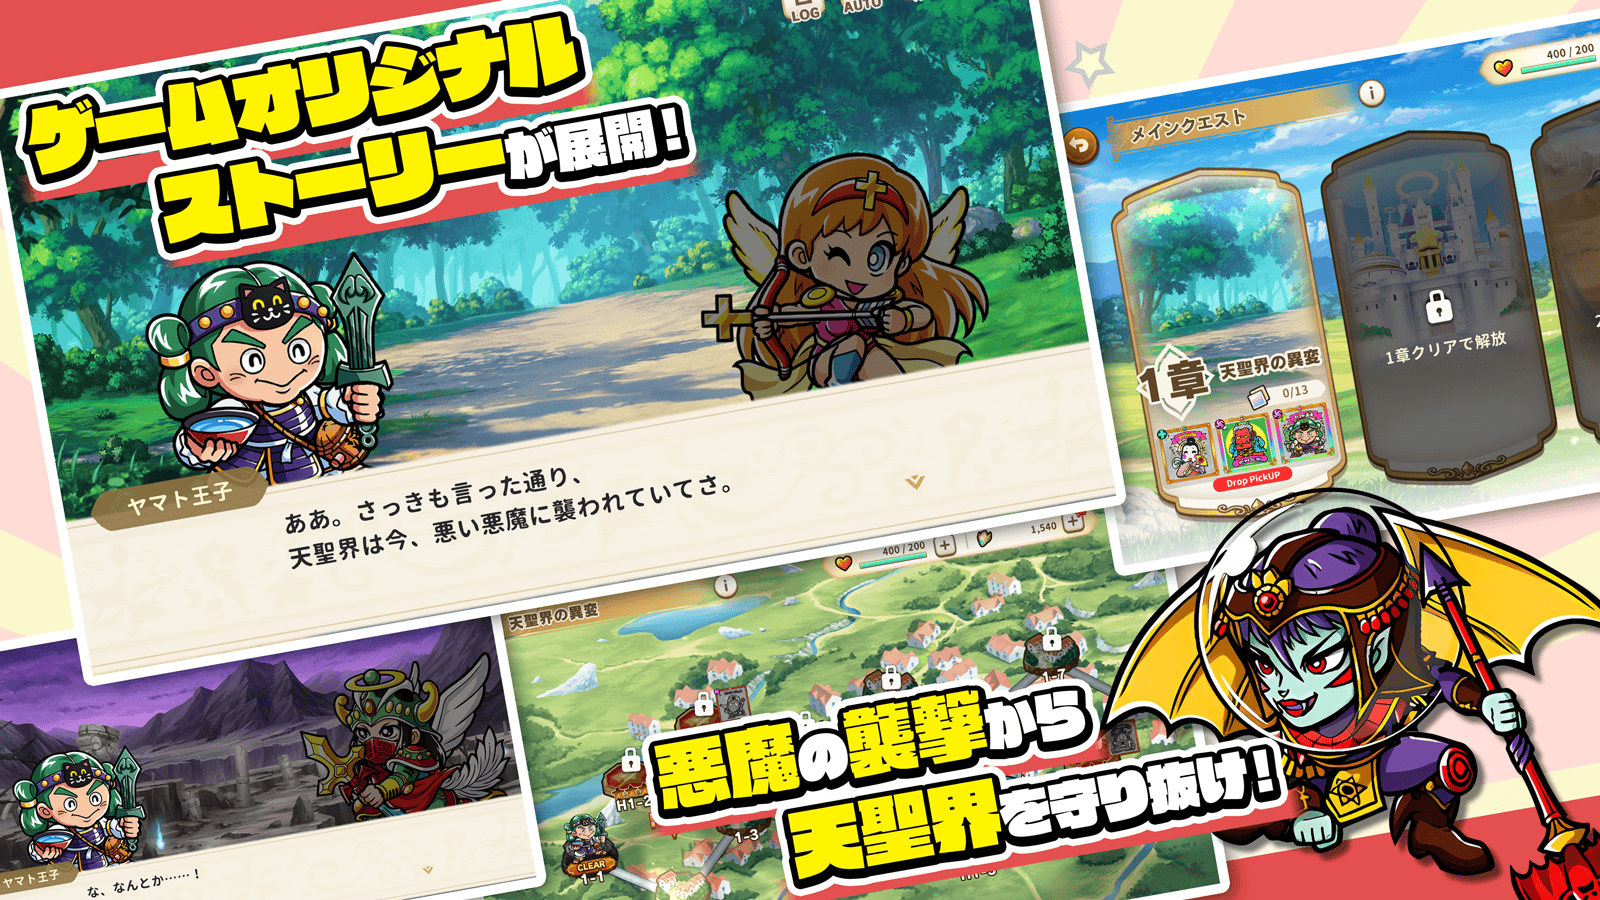 贴纸收藏RPG《圣魔大战奇幻收藏》于日本推出在手机上收集全新的圣魔大战贴纸